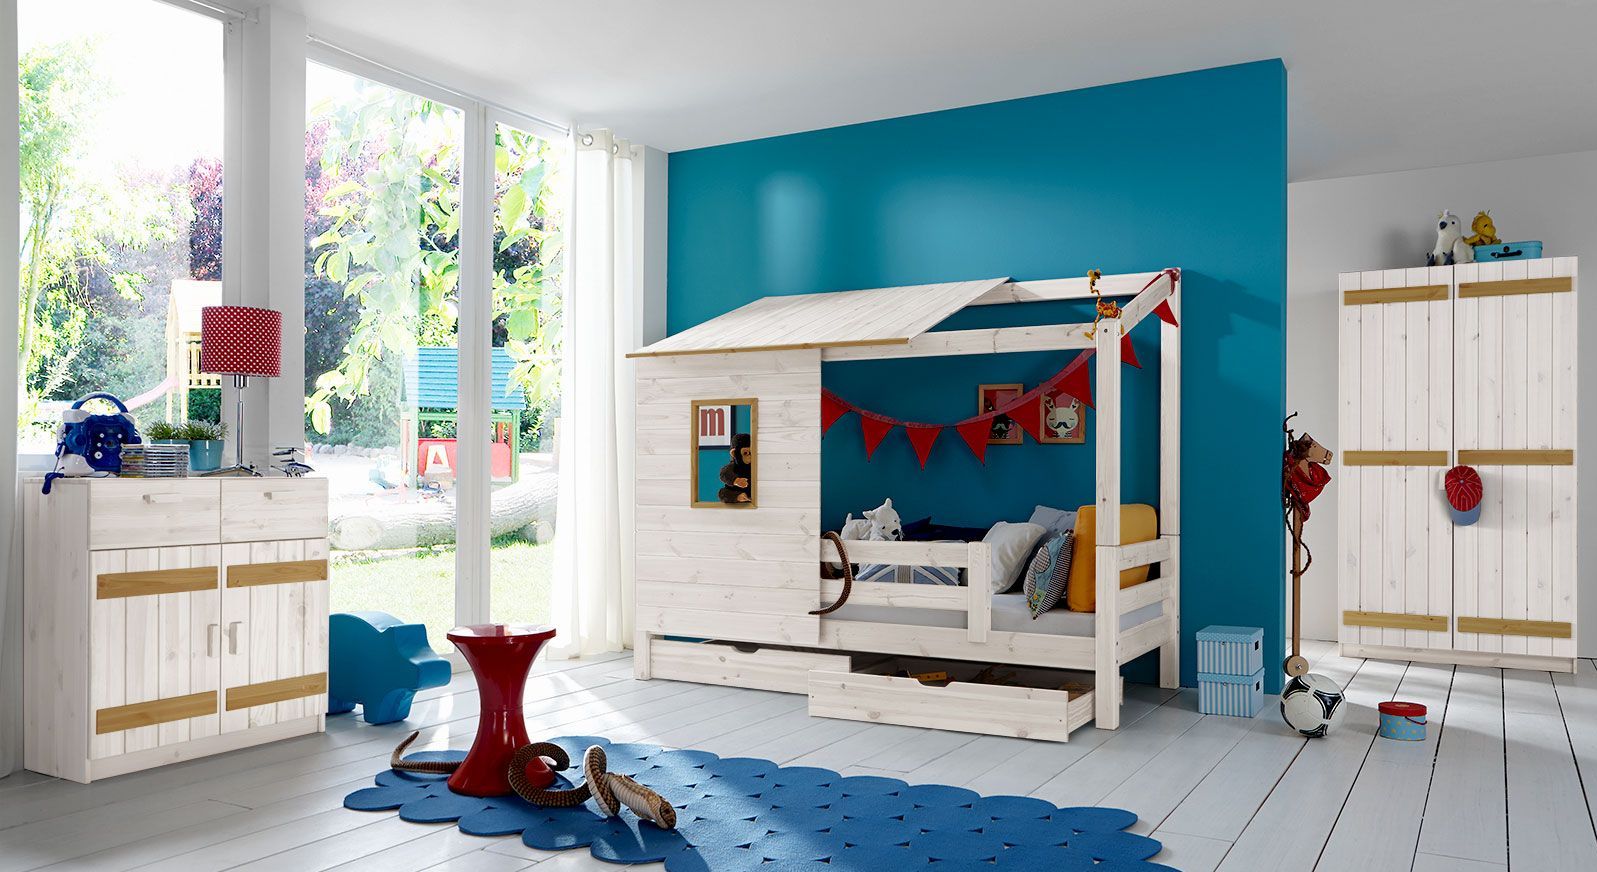 Abenteuerbett Kids Paradise mit Kinderzimmer-Zubehör kaufen